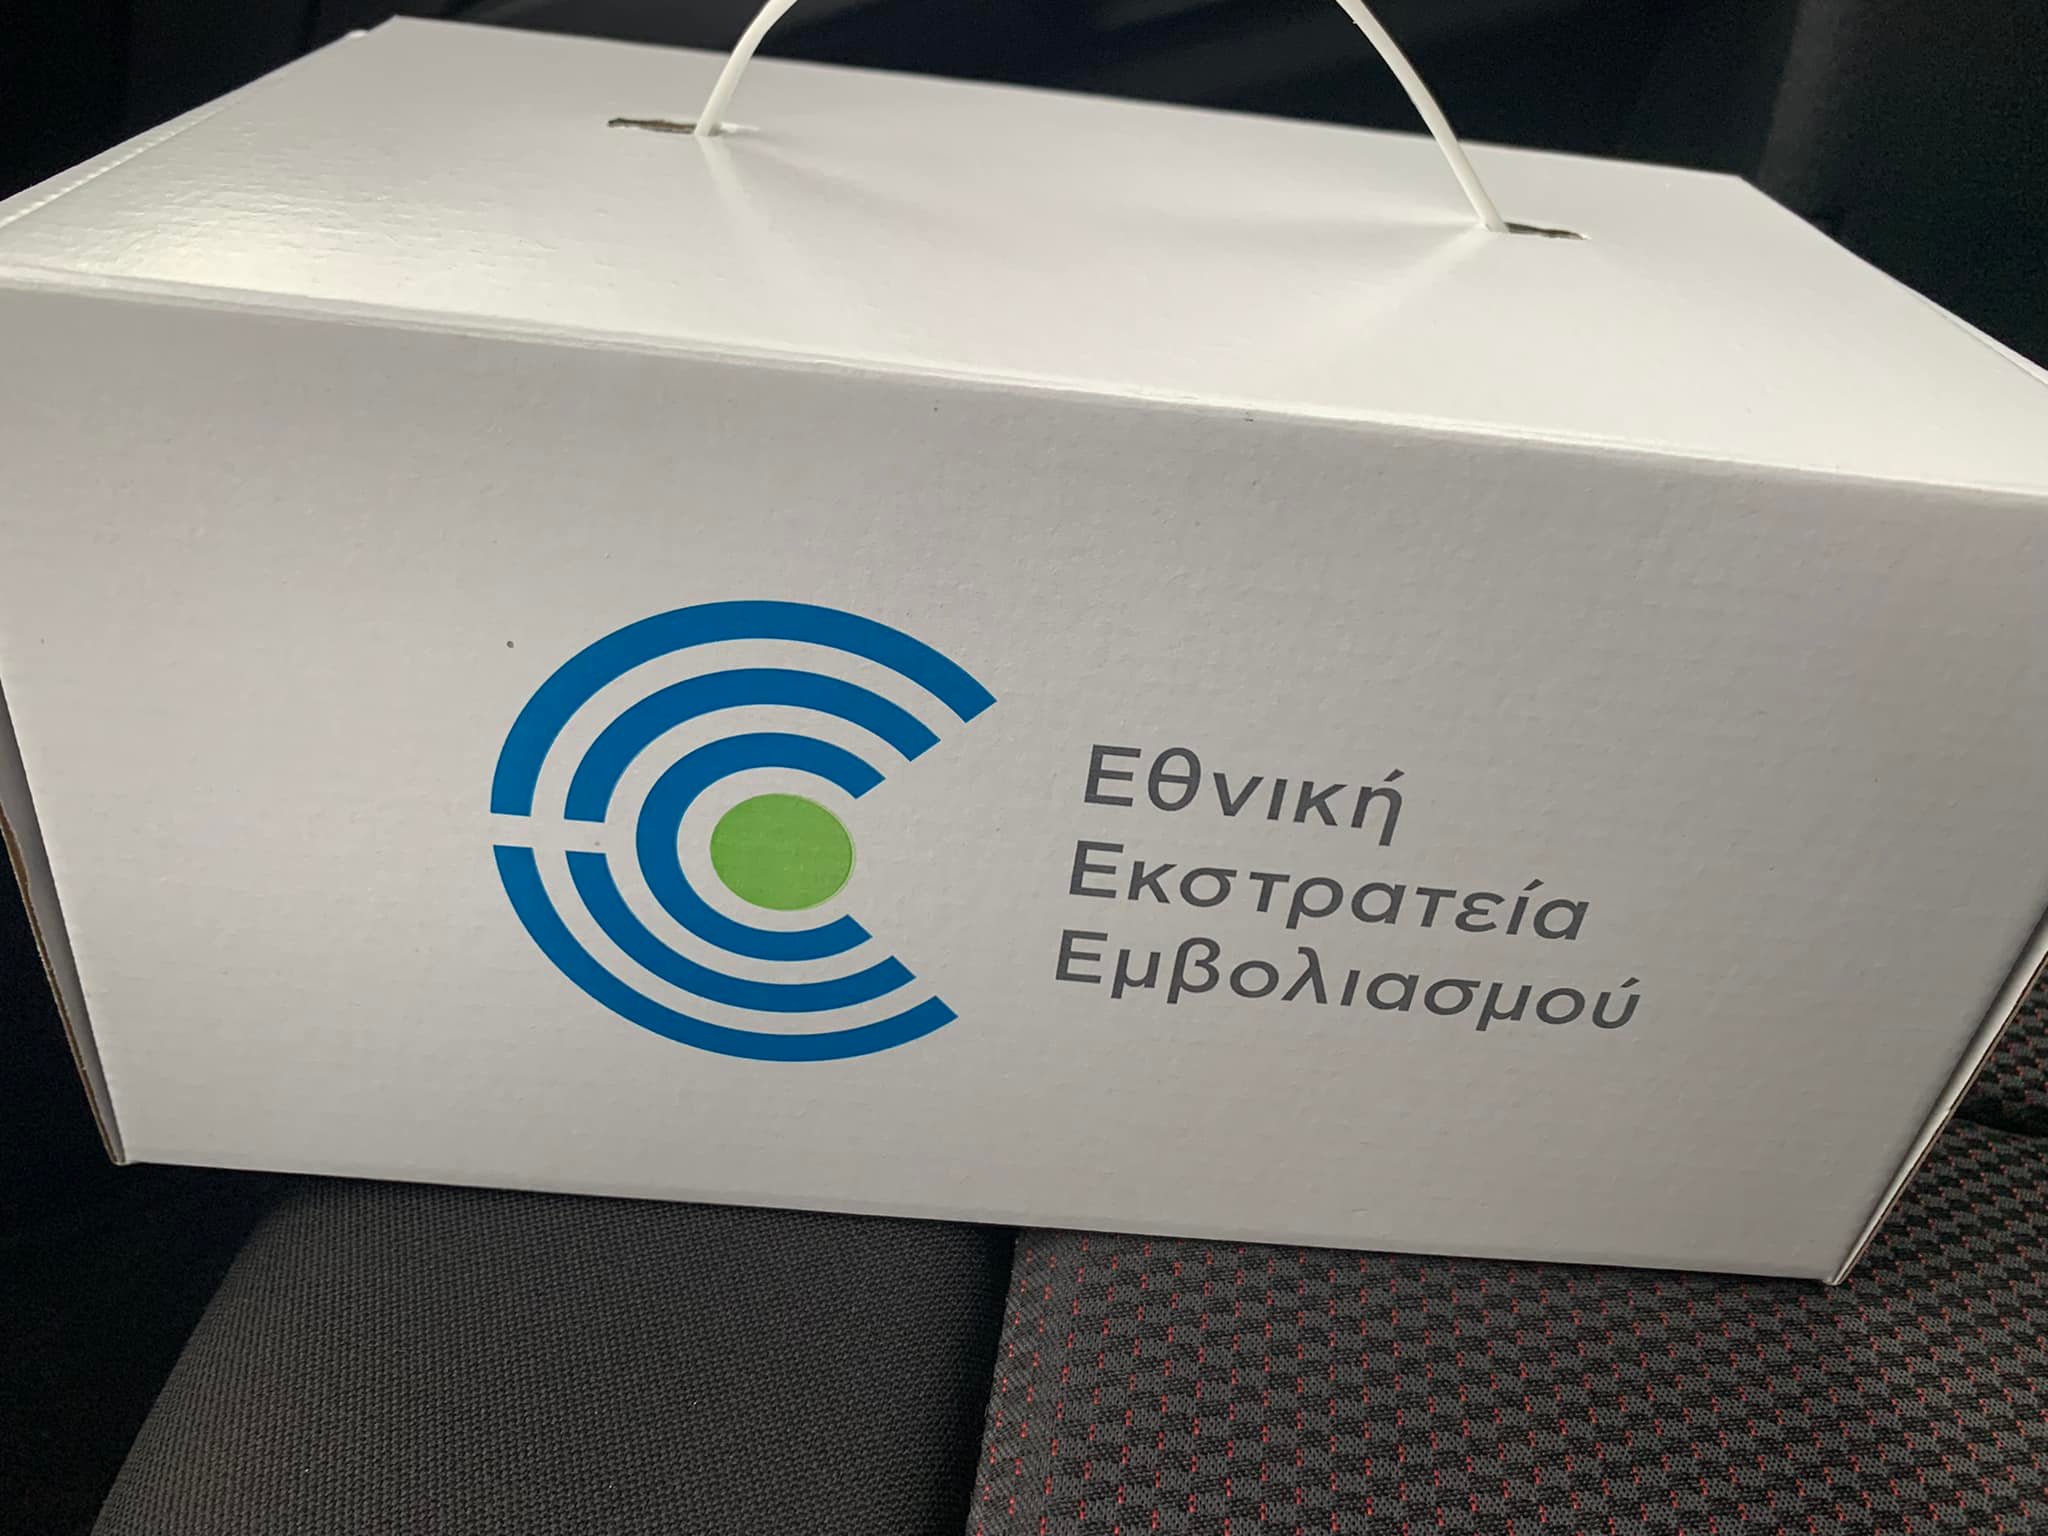 Ζέρβας στο evima.gr: Ξεκινήσαμε τους κατ´οίκον εμβολιασμούς με αυτοκίνητα του Δήμου Κύμης Αλιβερίου